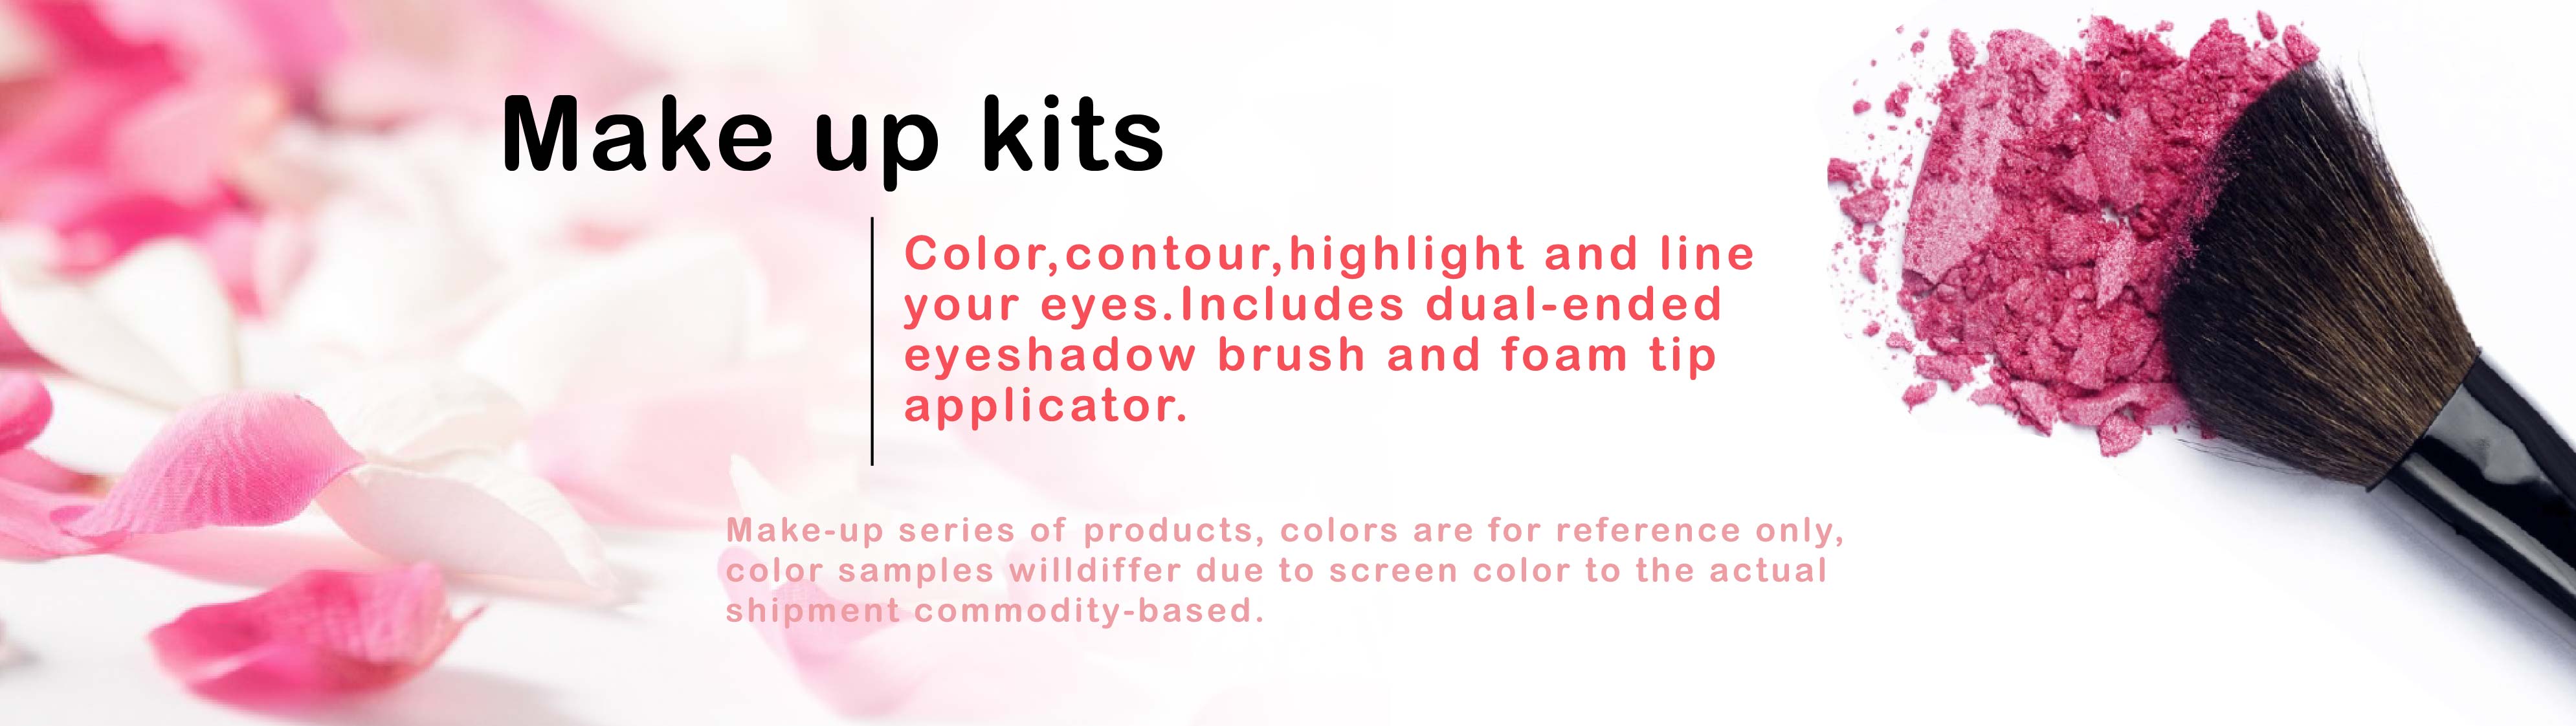 make up kits